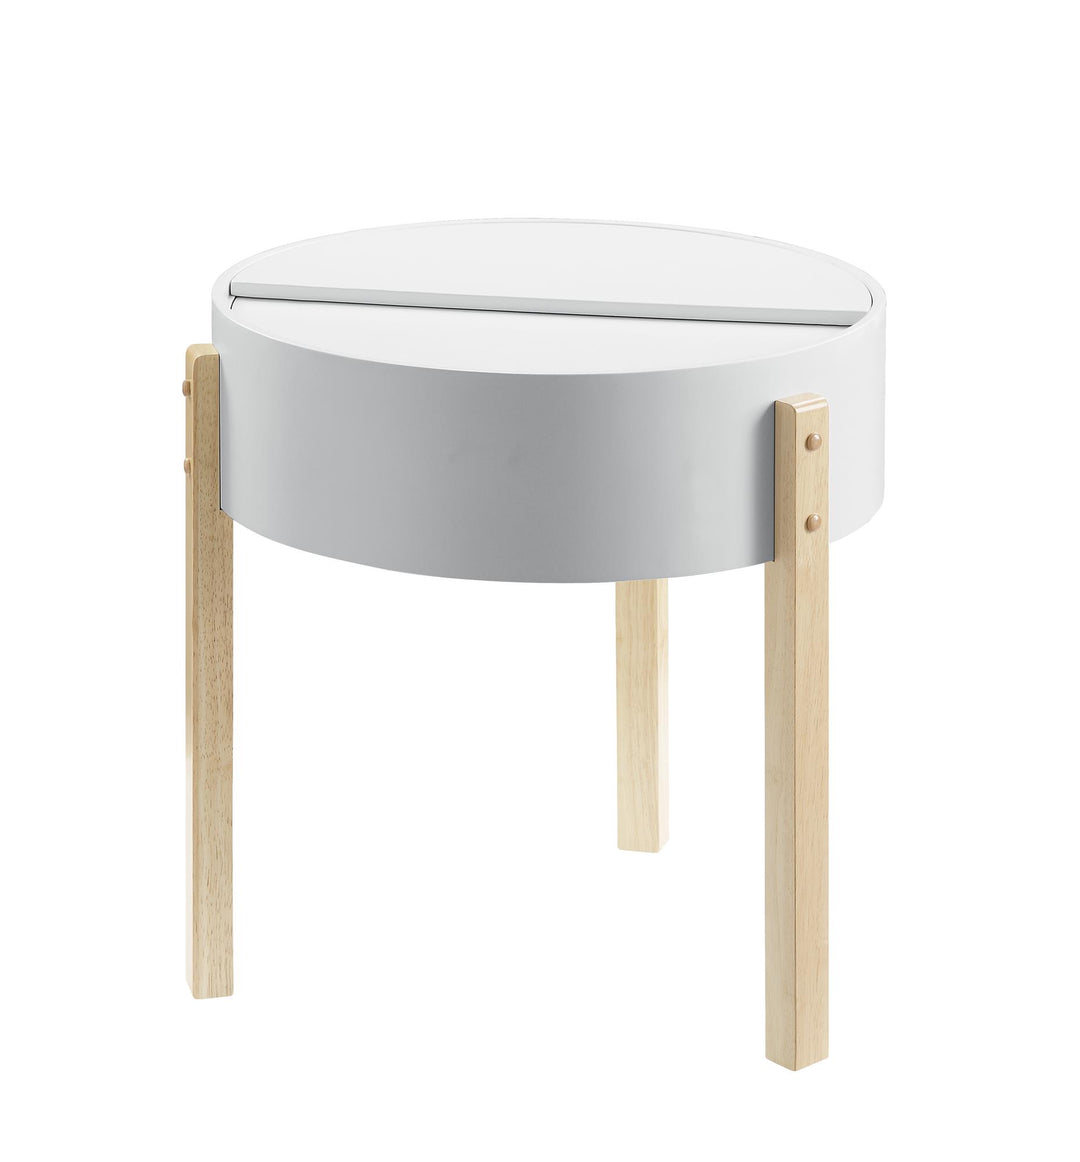 wooden round table with hidden storage - White